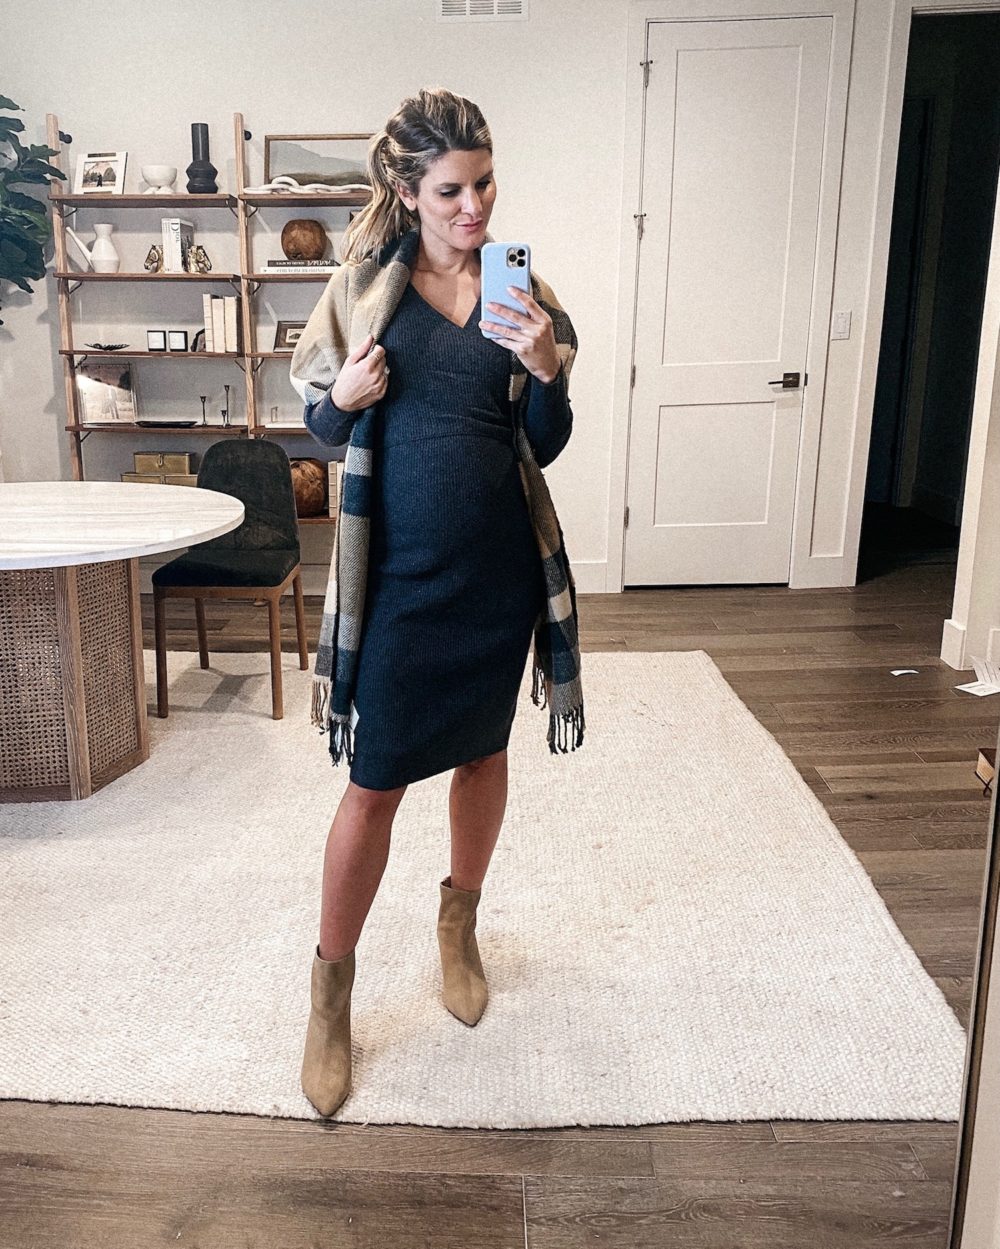 Buy Timeson Long Tunic Tops for Leggings Women,Cowl Neck Maternity